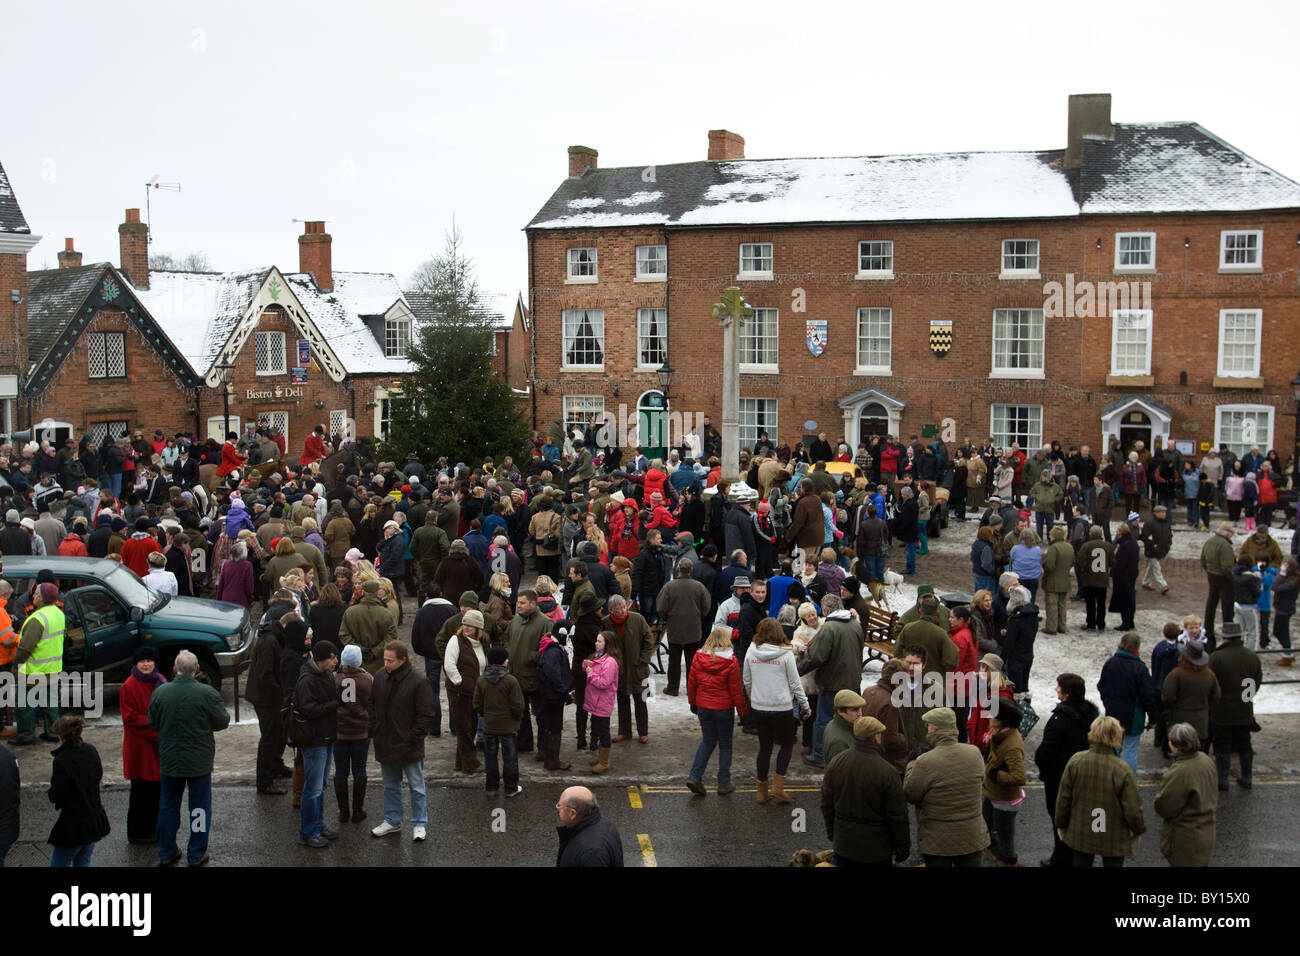 Boxing Day Jagd treffen sich am Market Bosworth, Leicestershire. Bild zeigt die versammelten Menge am Markt Platz. Stockfoto